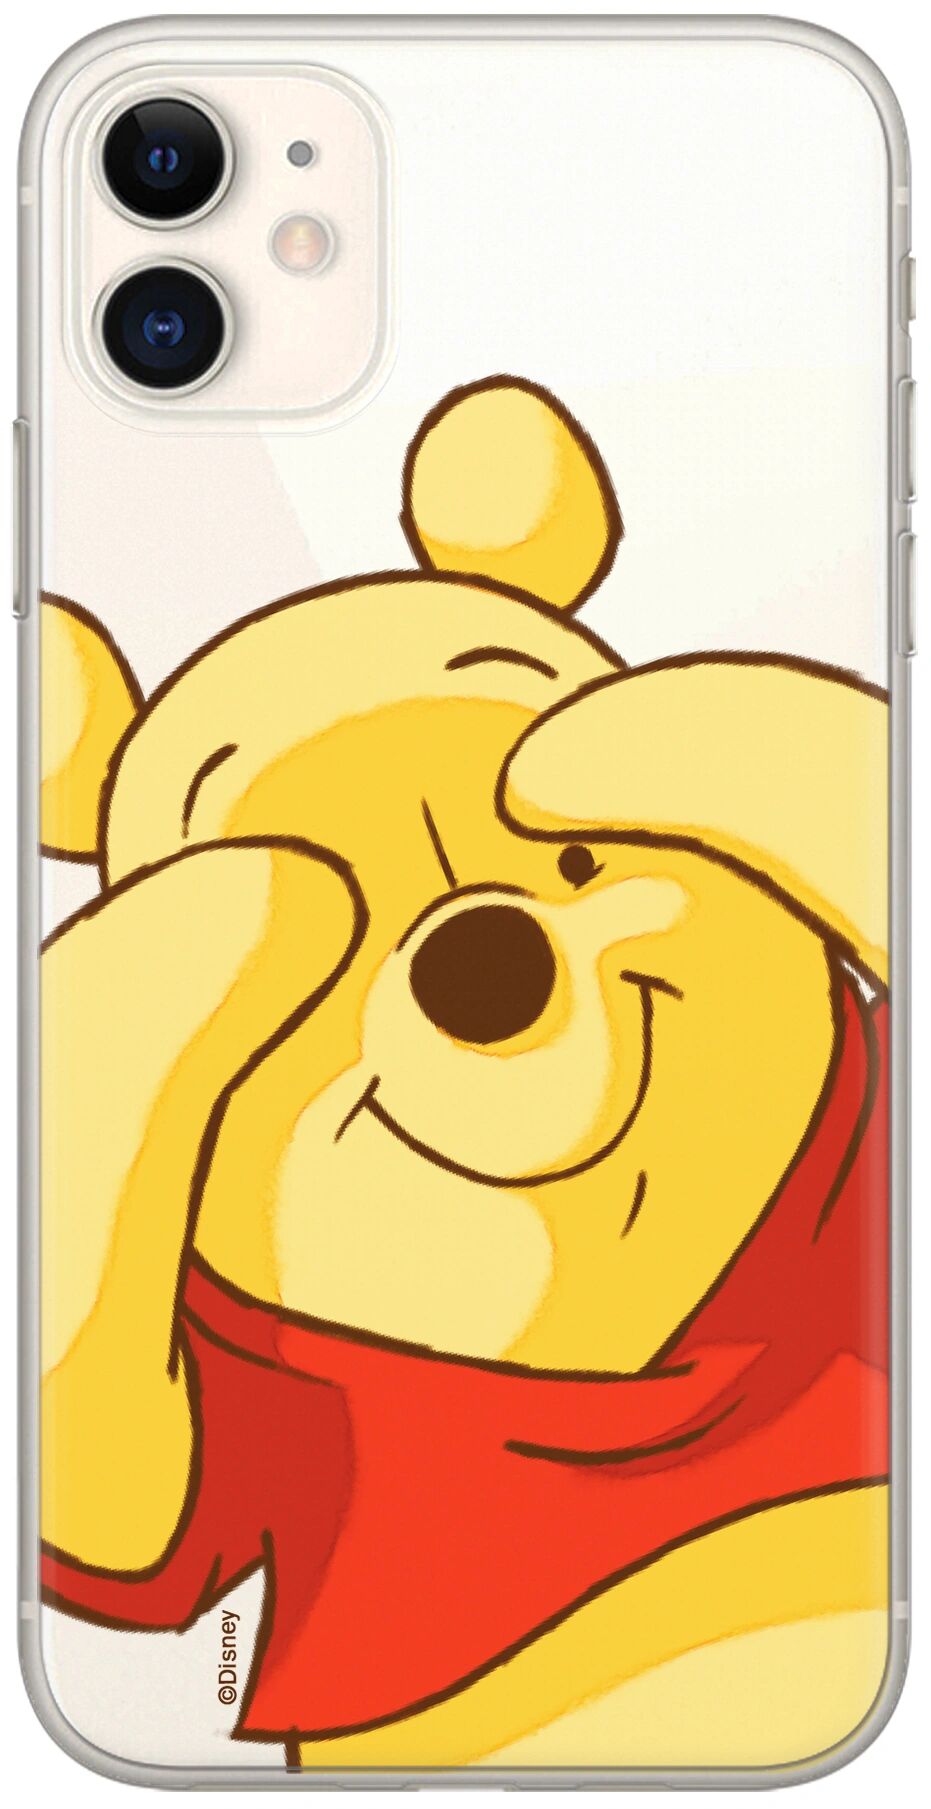 Ert Ochranný kryt pro iPhone 12 mini - Winnie the Pooh 033